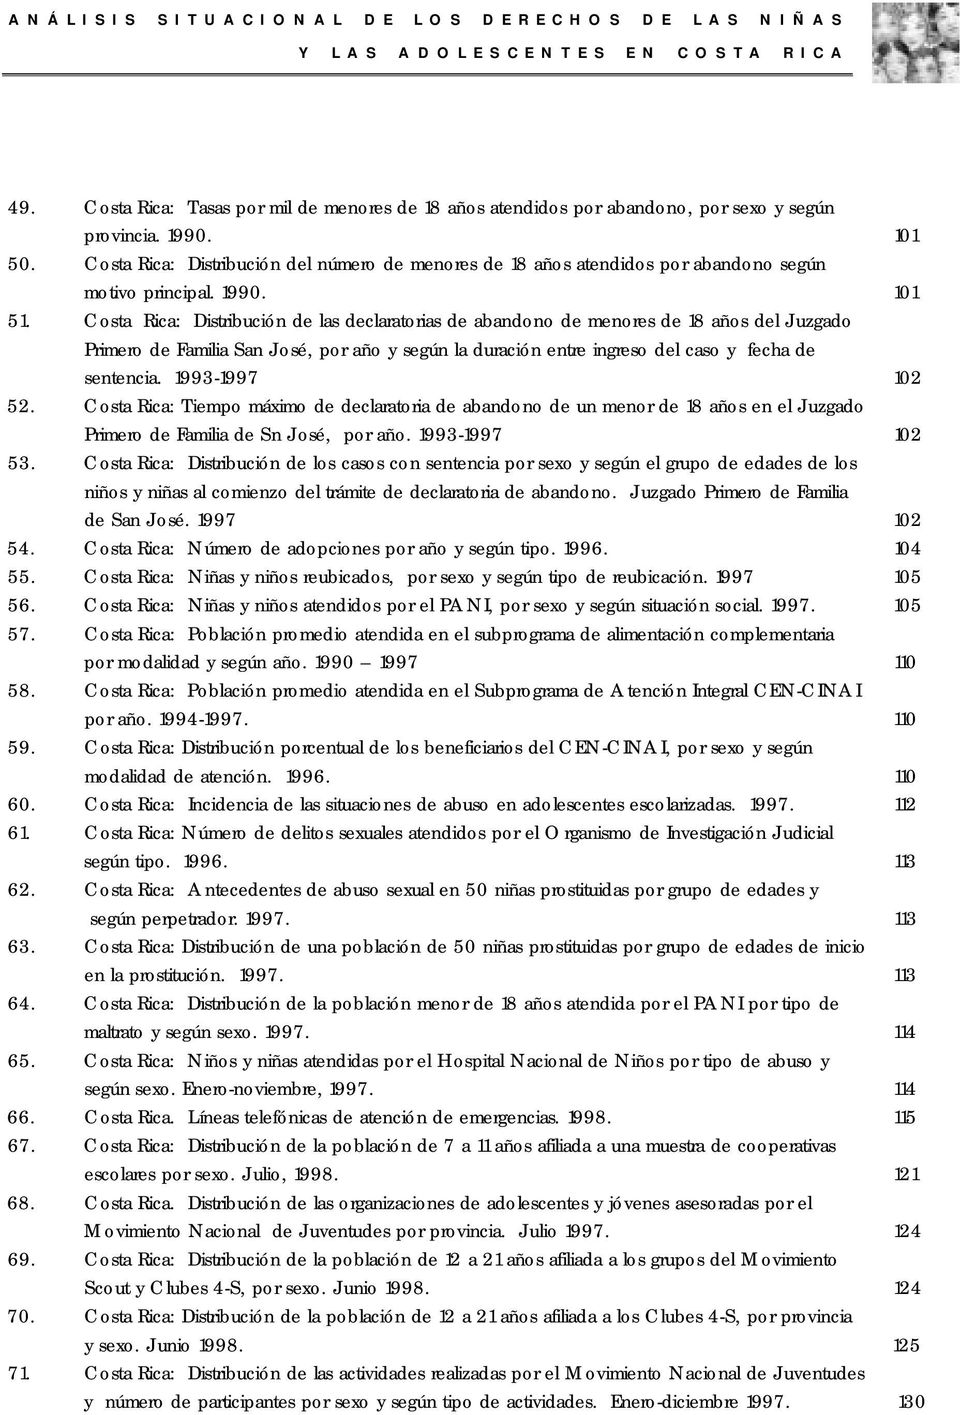 Costa Rica: Distribución de las declaratorias de abandono de menores de 18 años del Juzgado Primero de Familia San José, por año y según la duración entre ingreso del caso y fecha de sentencia.